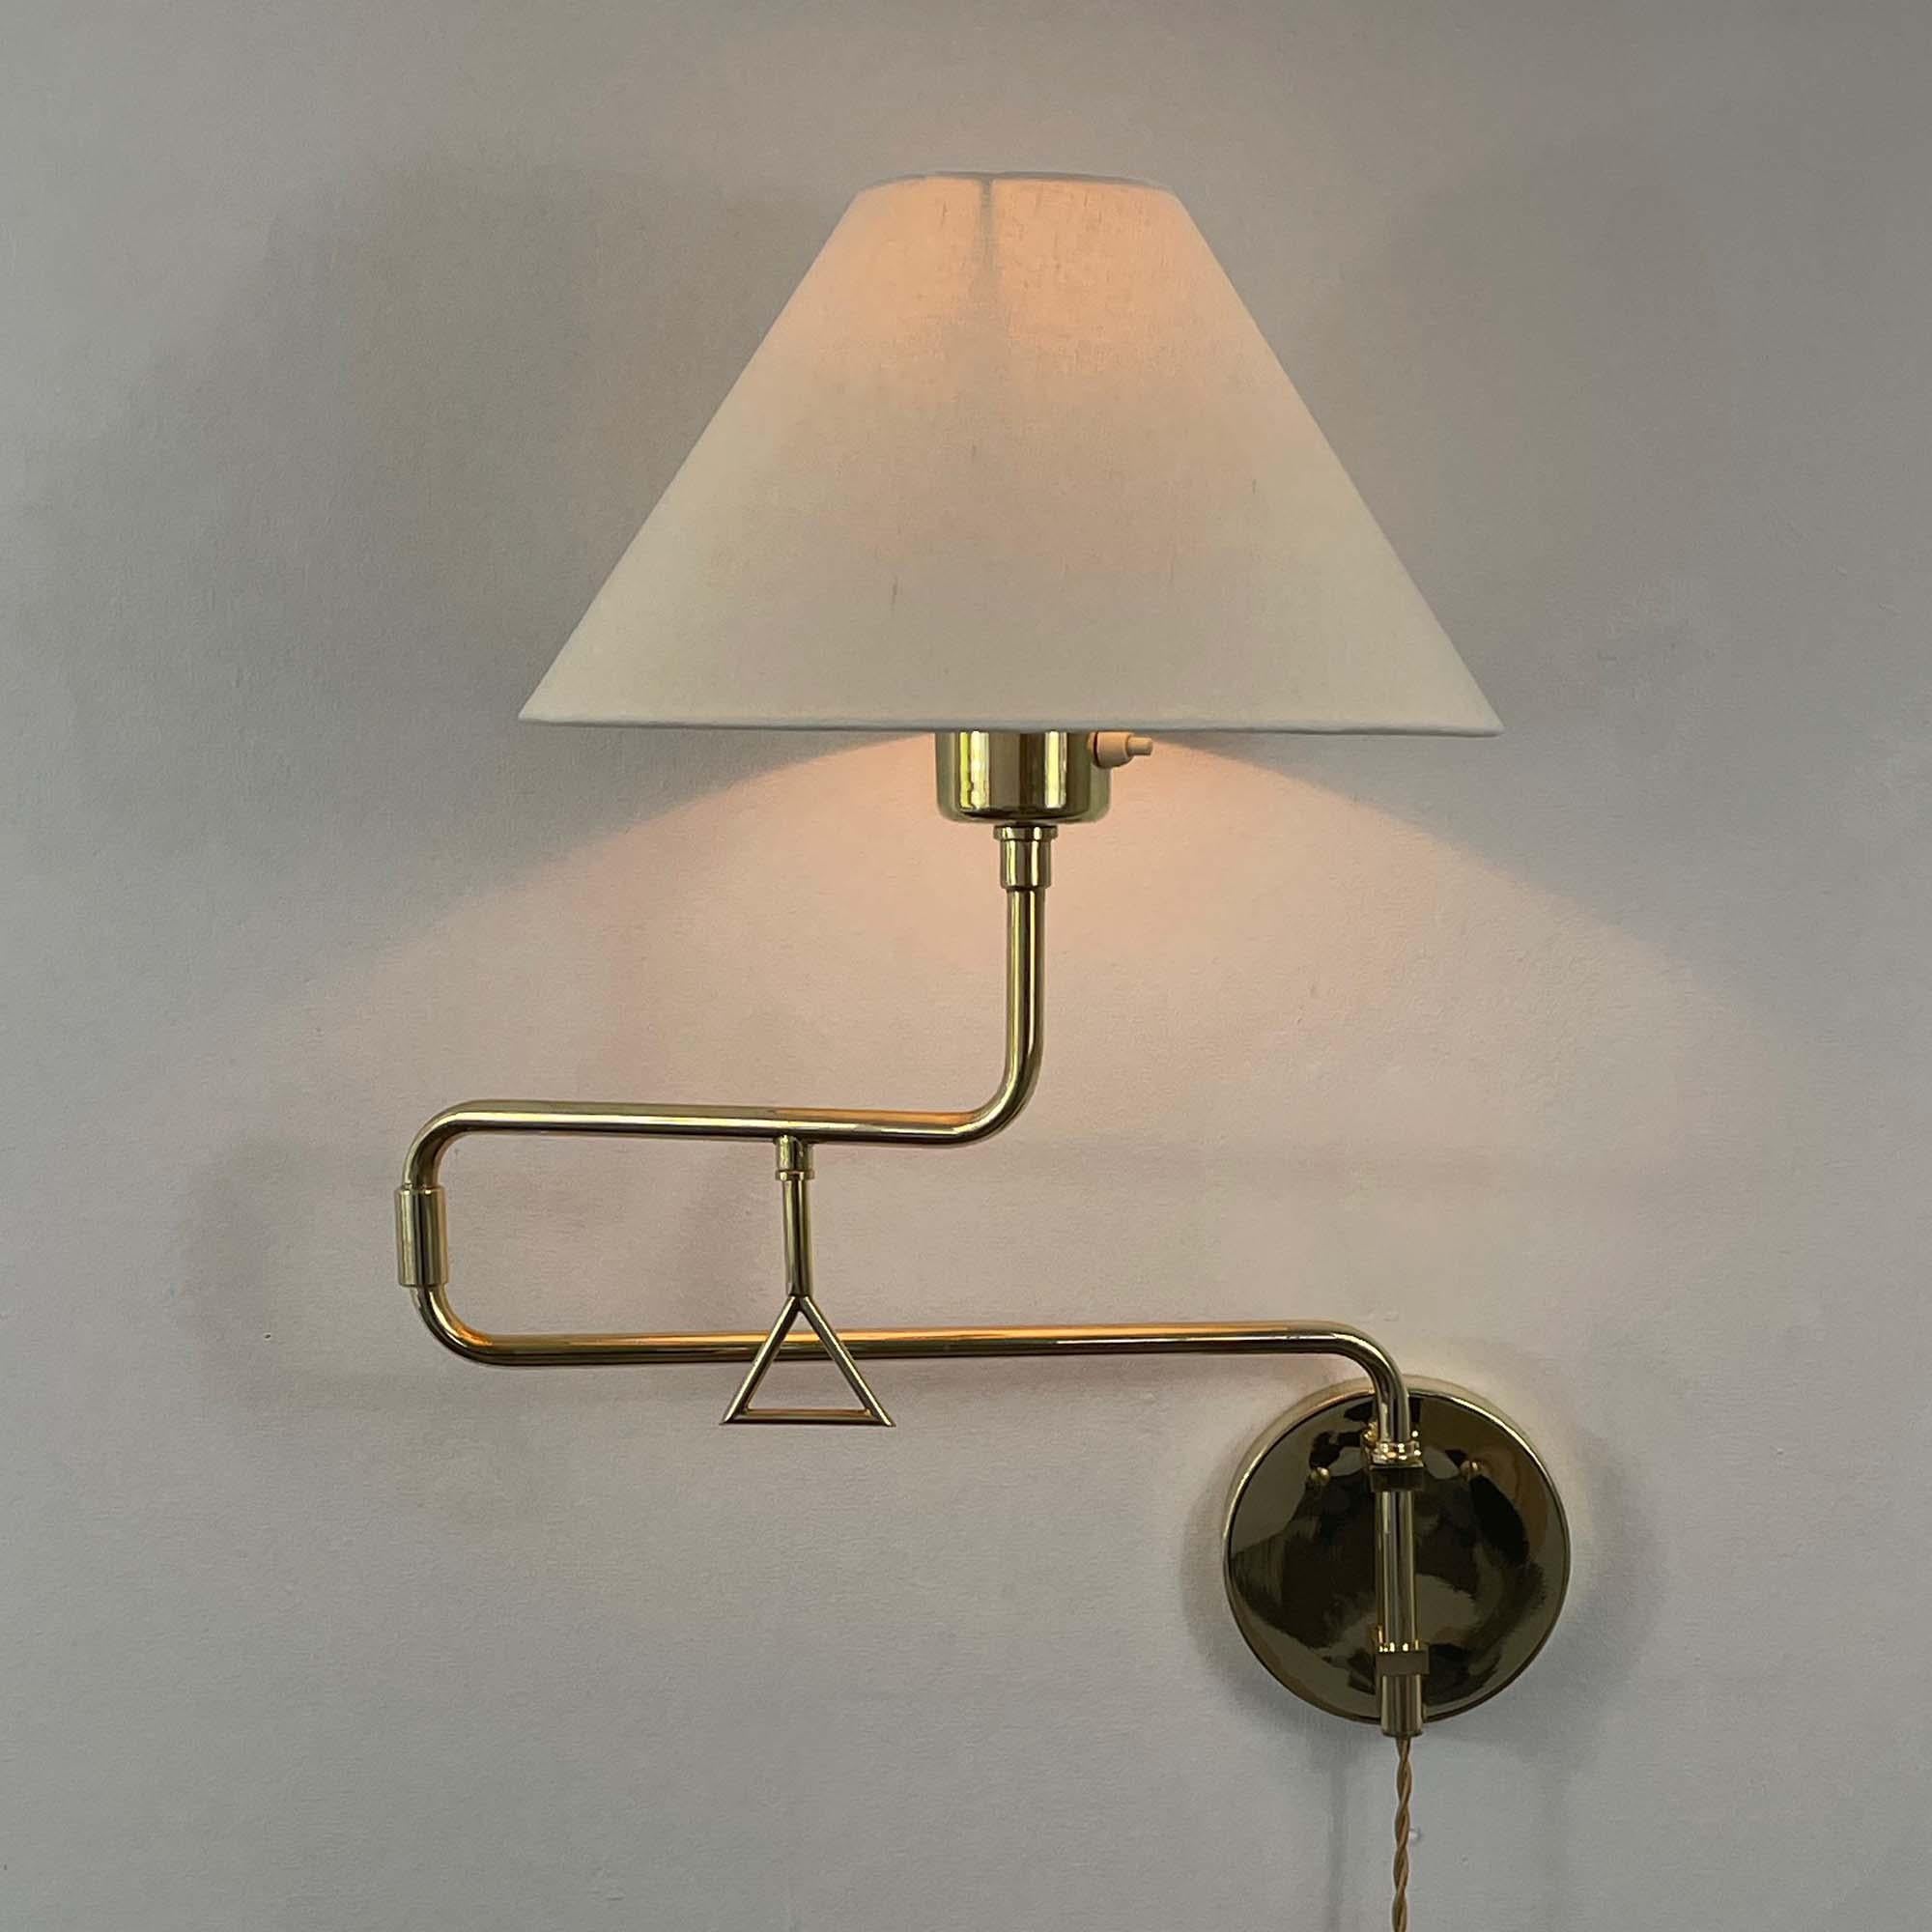 Mid-Century Modern Articulating Brass Wall Light, Armatur Hantverk Tibro, Sweden 1950s For Sale